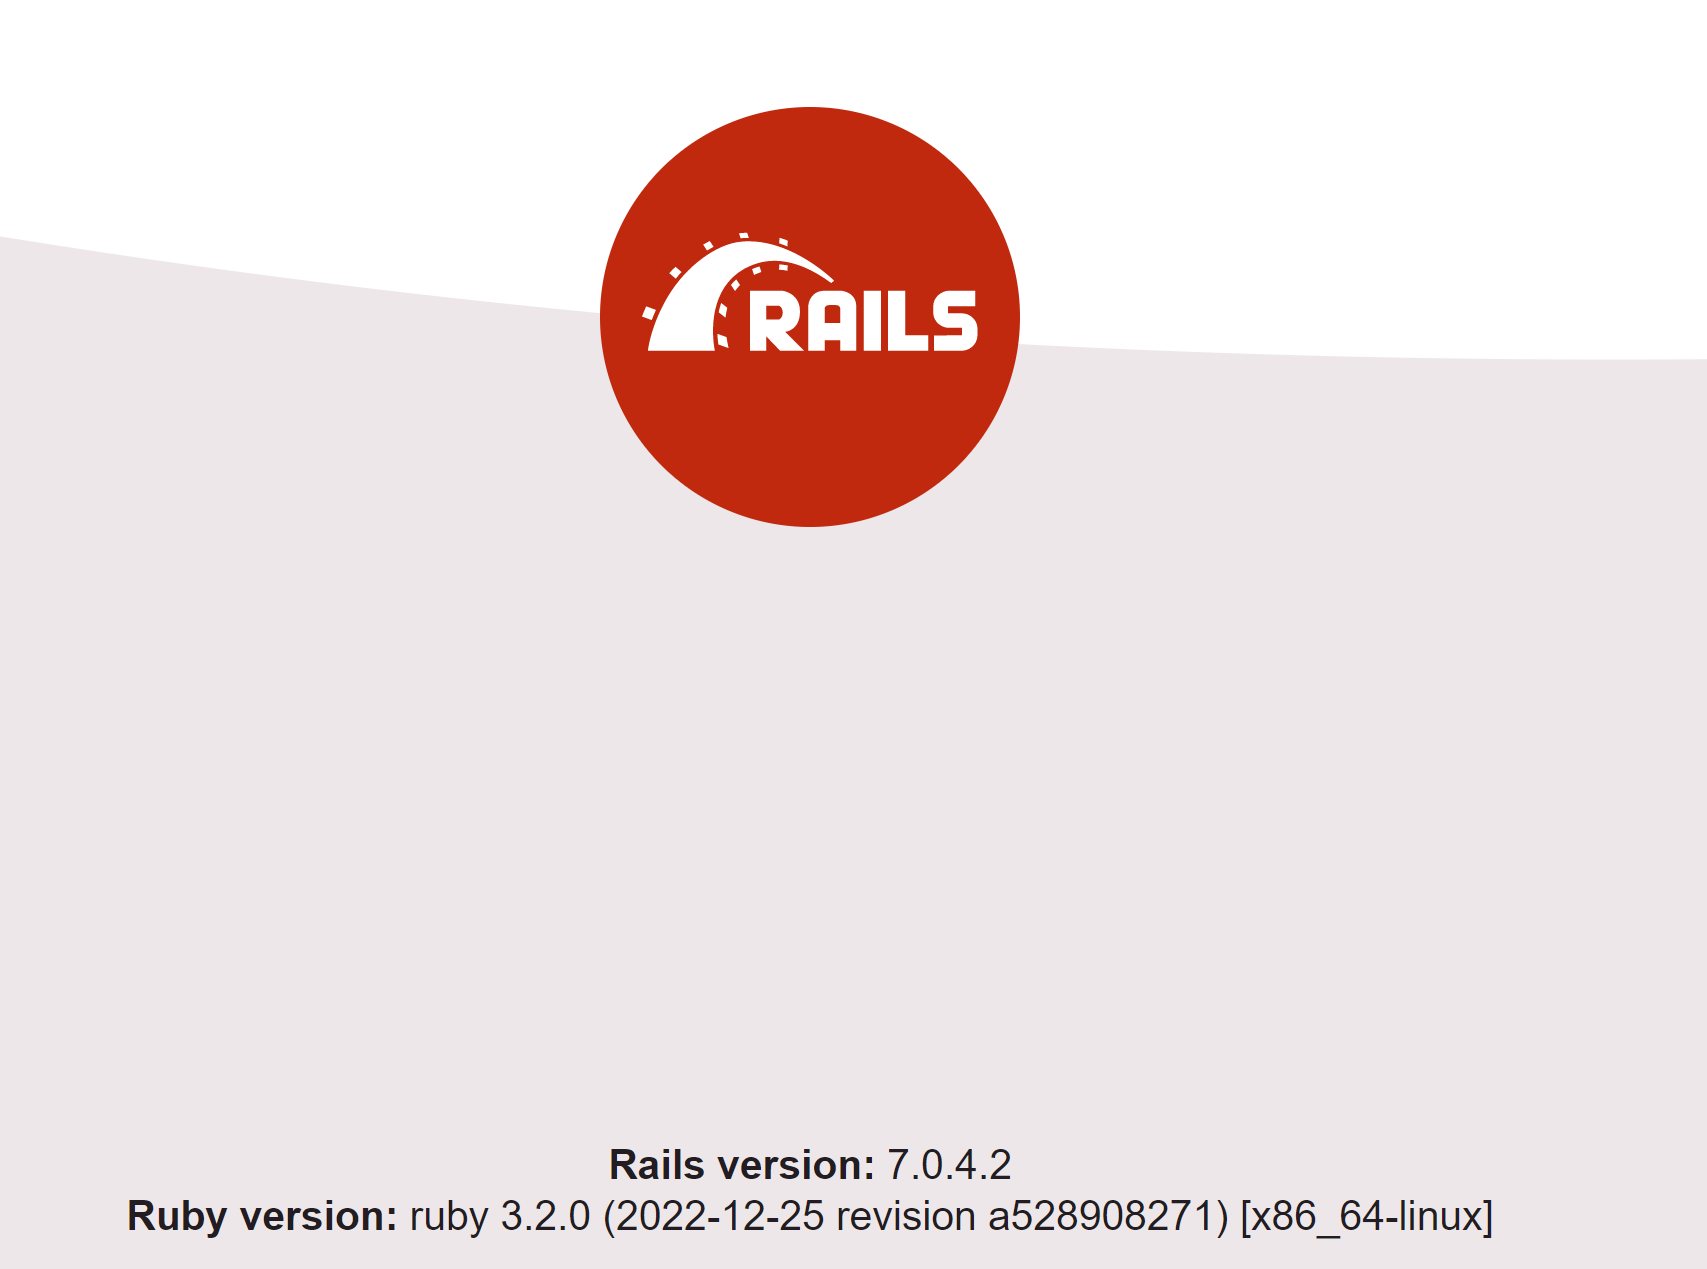 Rails default landing page.